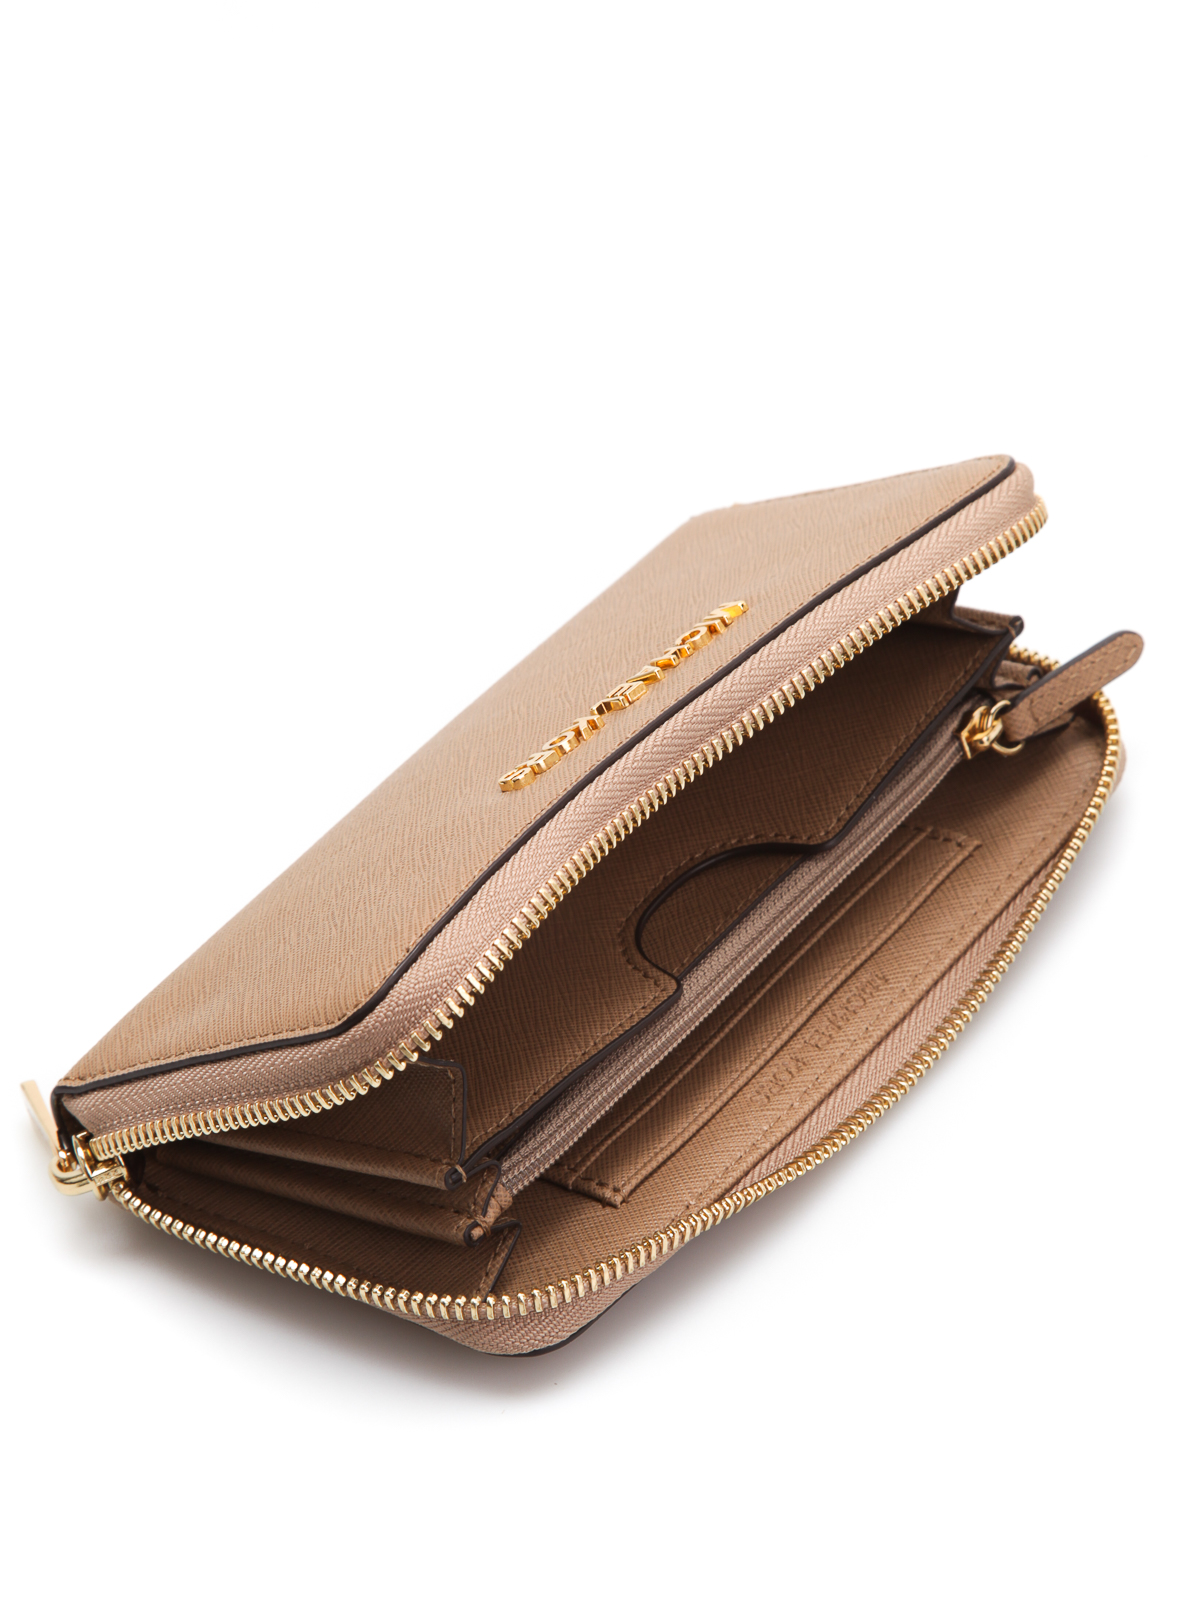 Wallets & purses Michael Kors - Jet Set Travel leather wallet - 32T4GTVE3L